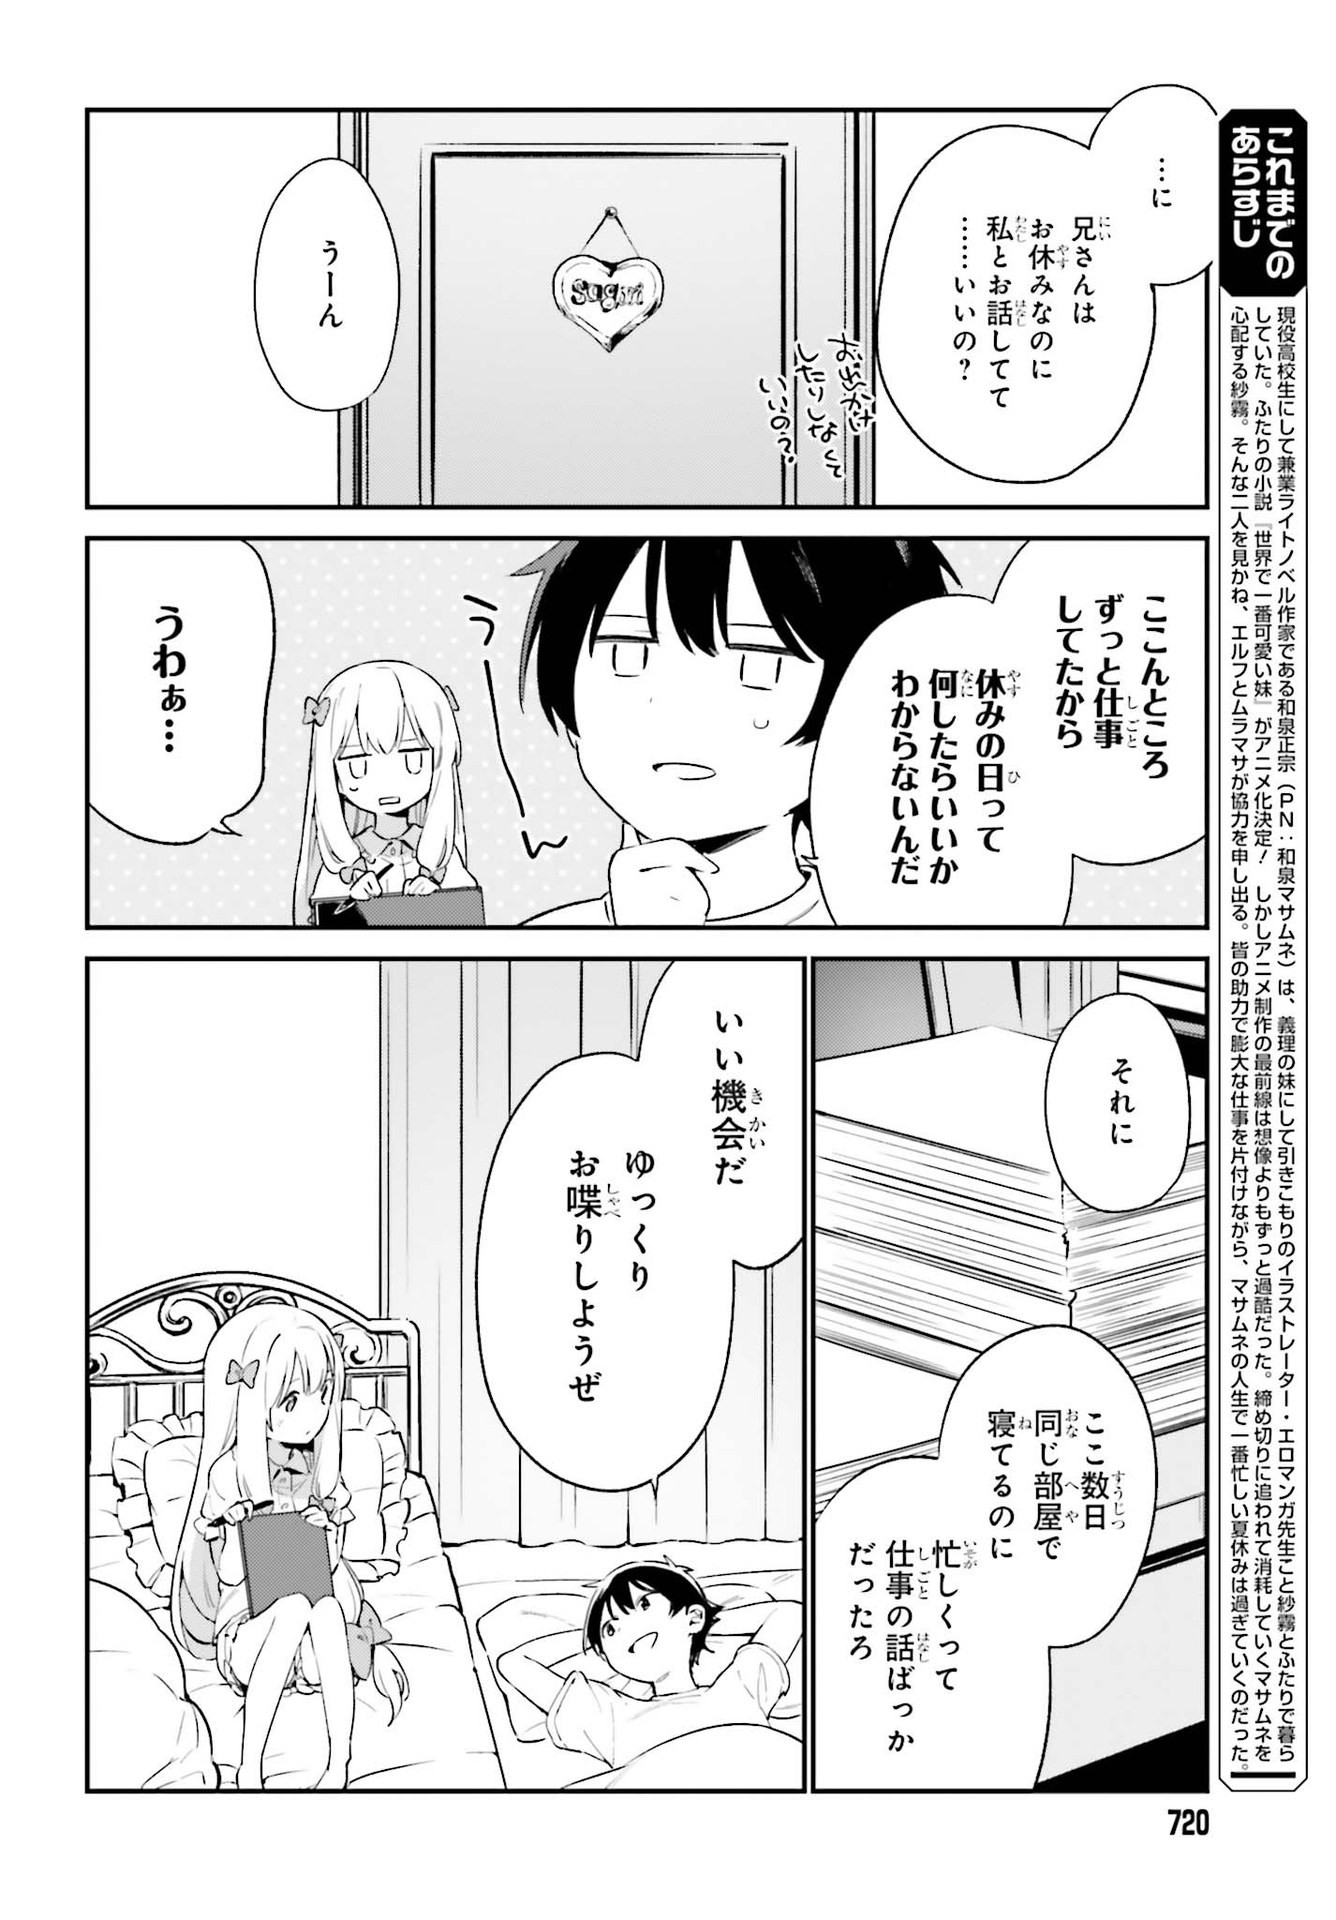 Ero Manga Sensei - Chapter 77 - Page 6